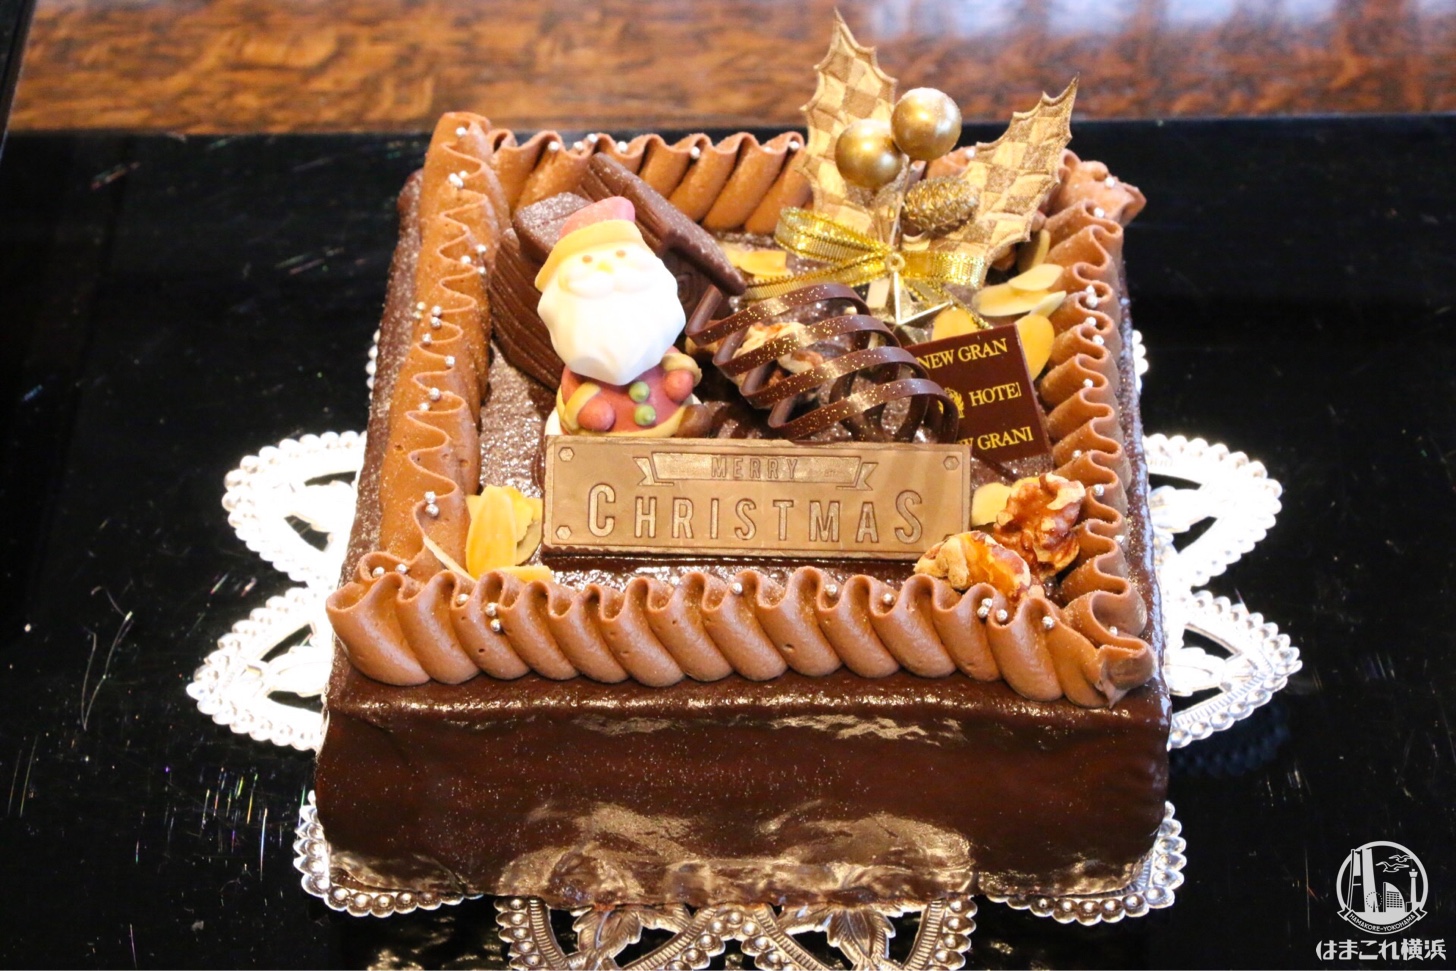 生チョコレートケーキ